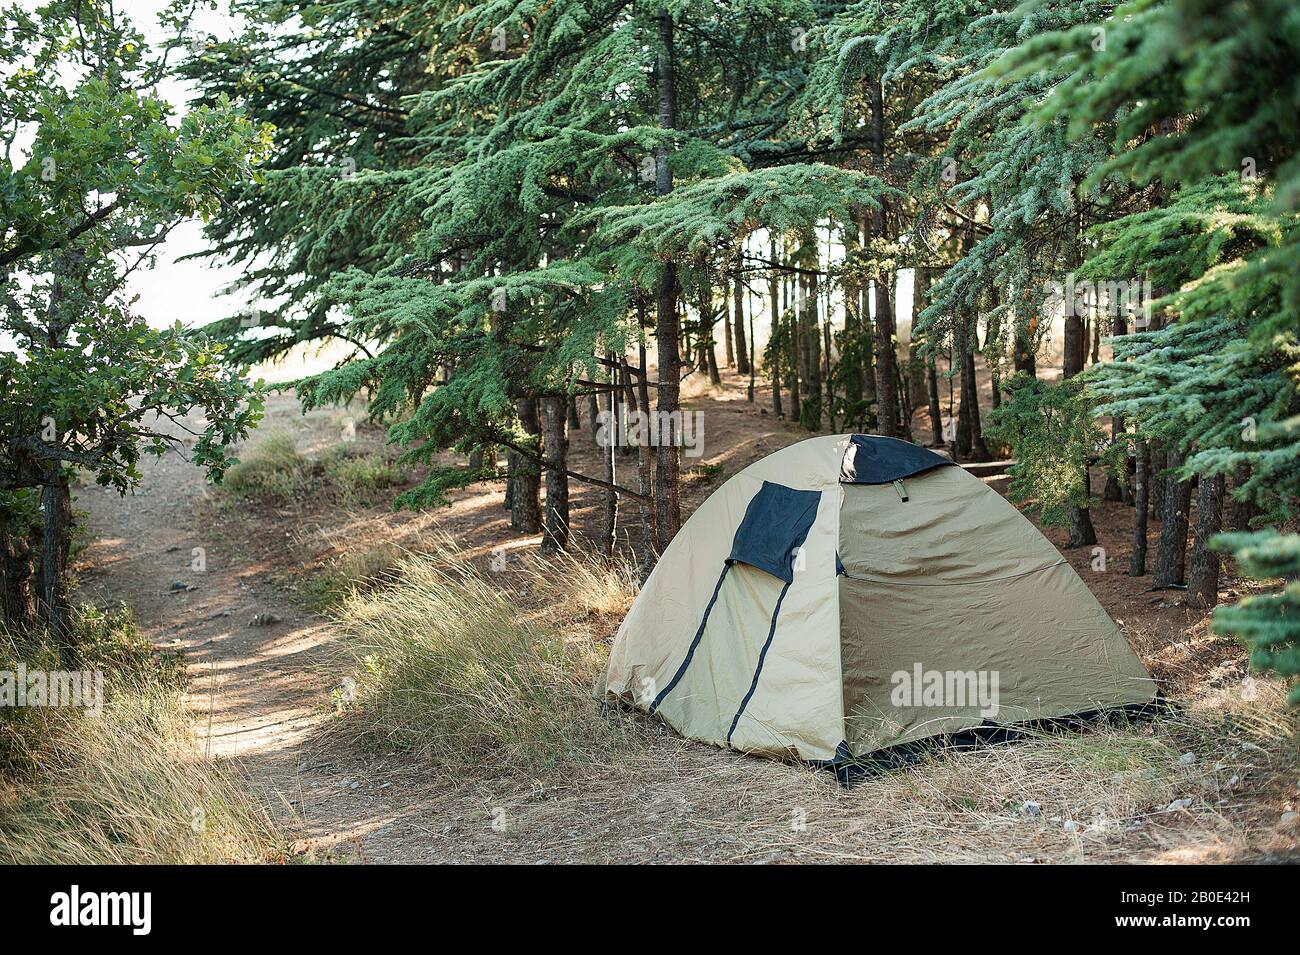 Khaki-Zelt im Wald, wilde Ruhe im Wald, Camping im Wald Stockfotografie -  Alamy